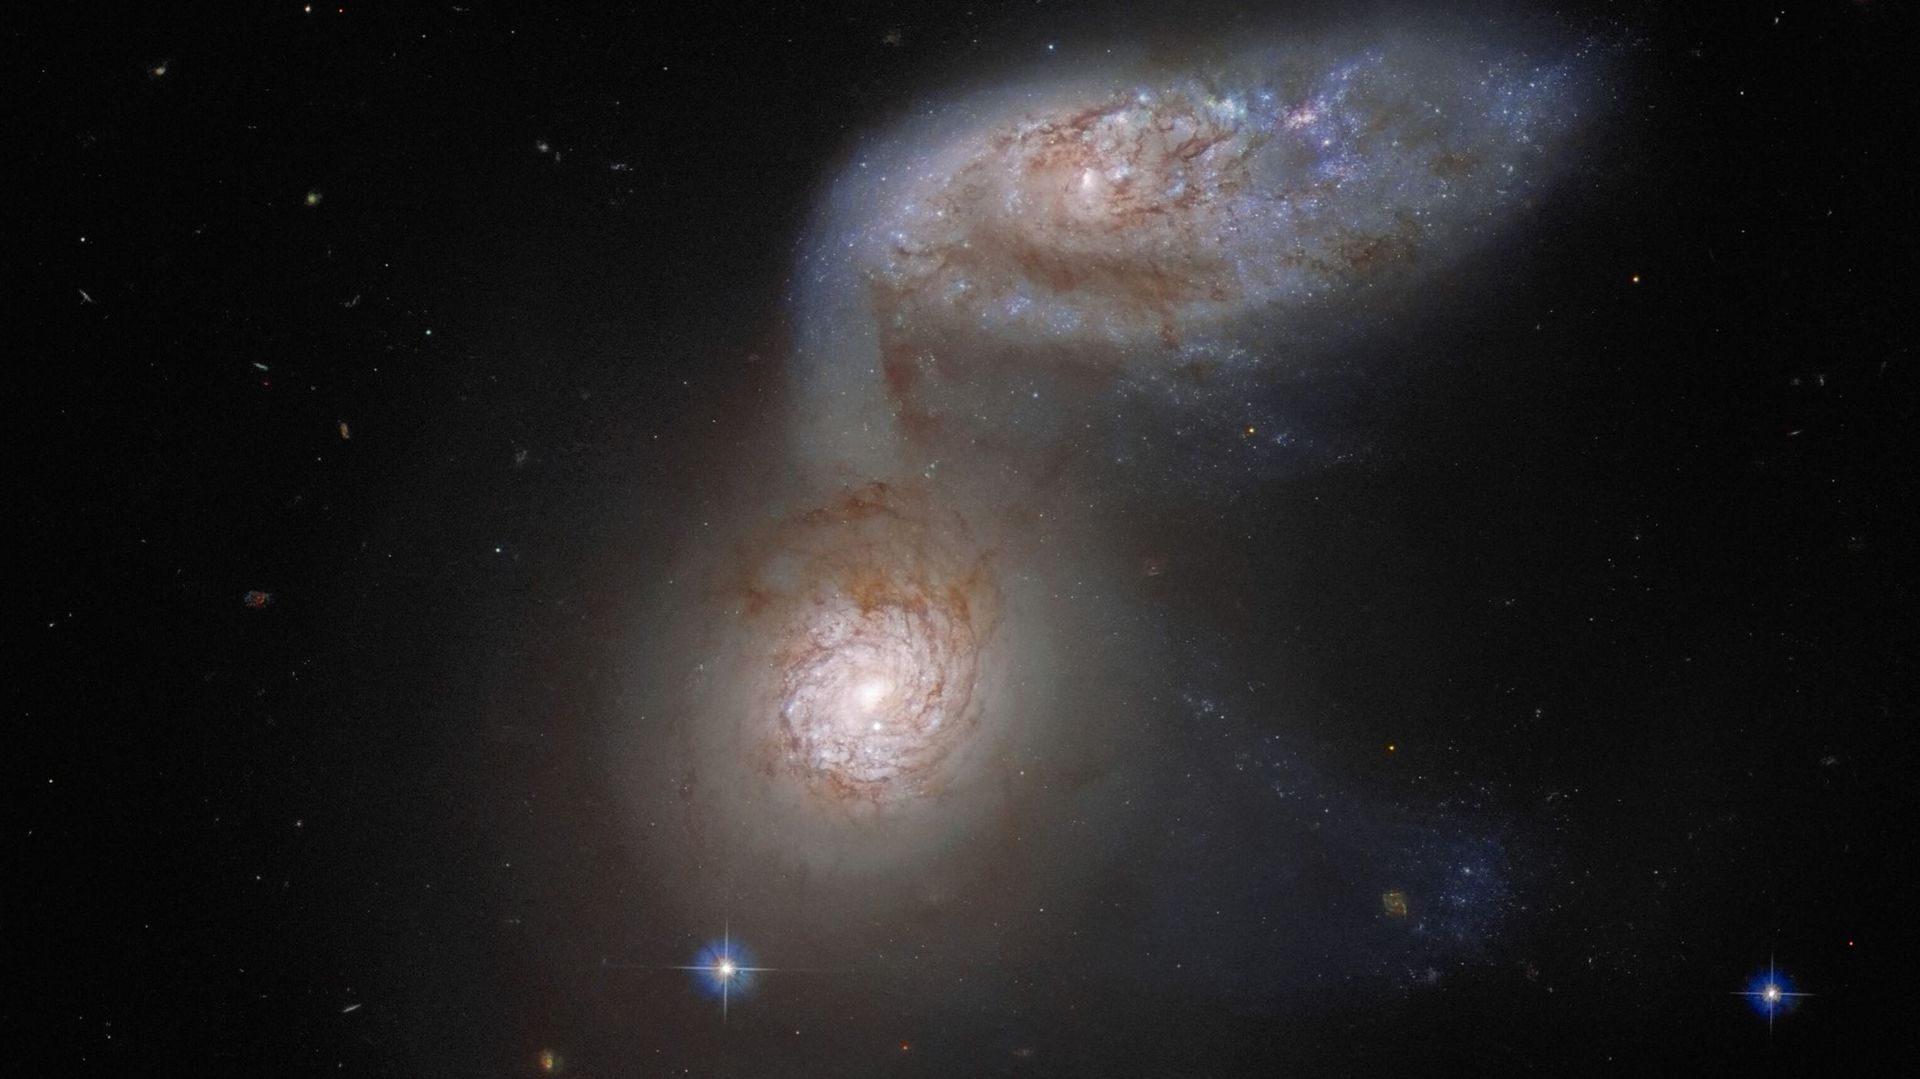 Hubble : le télescope capture un smiley et une danse cosmique, une semaine prolifique en beauté céleste